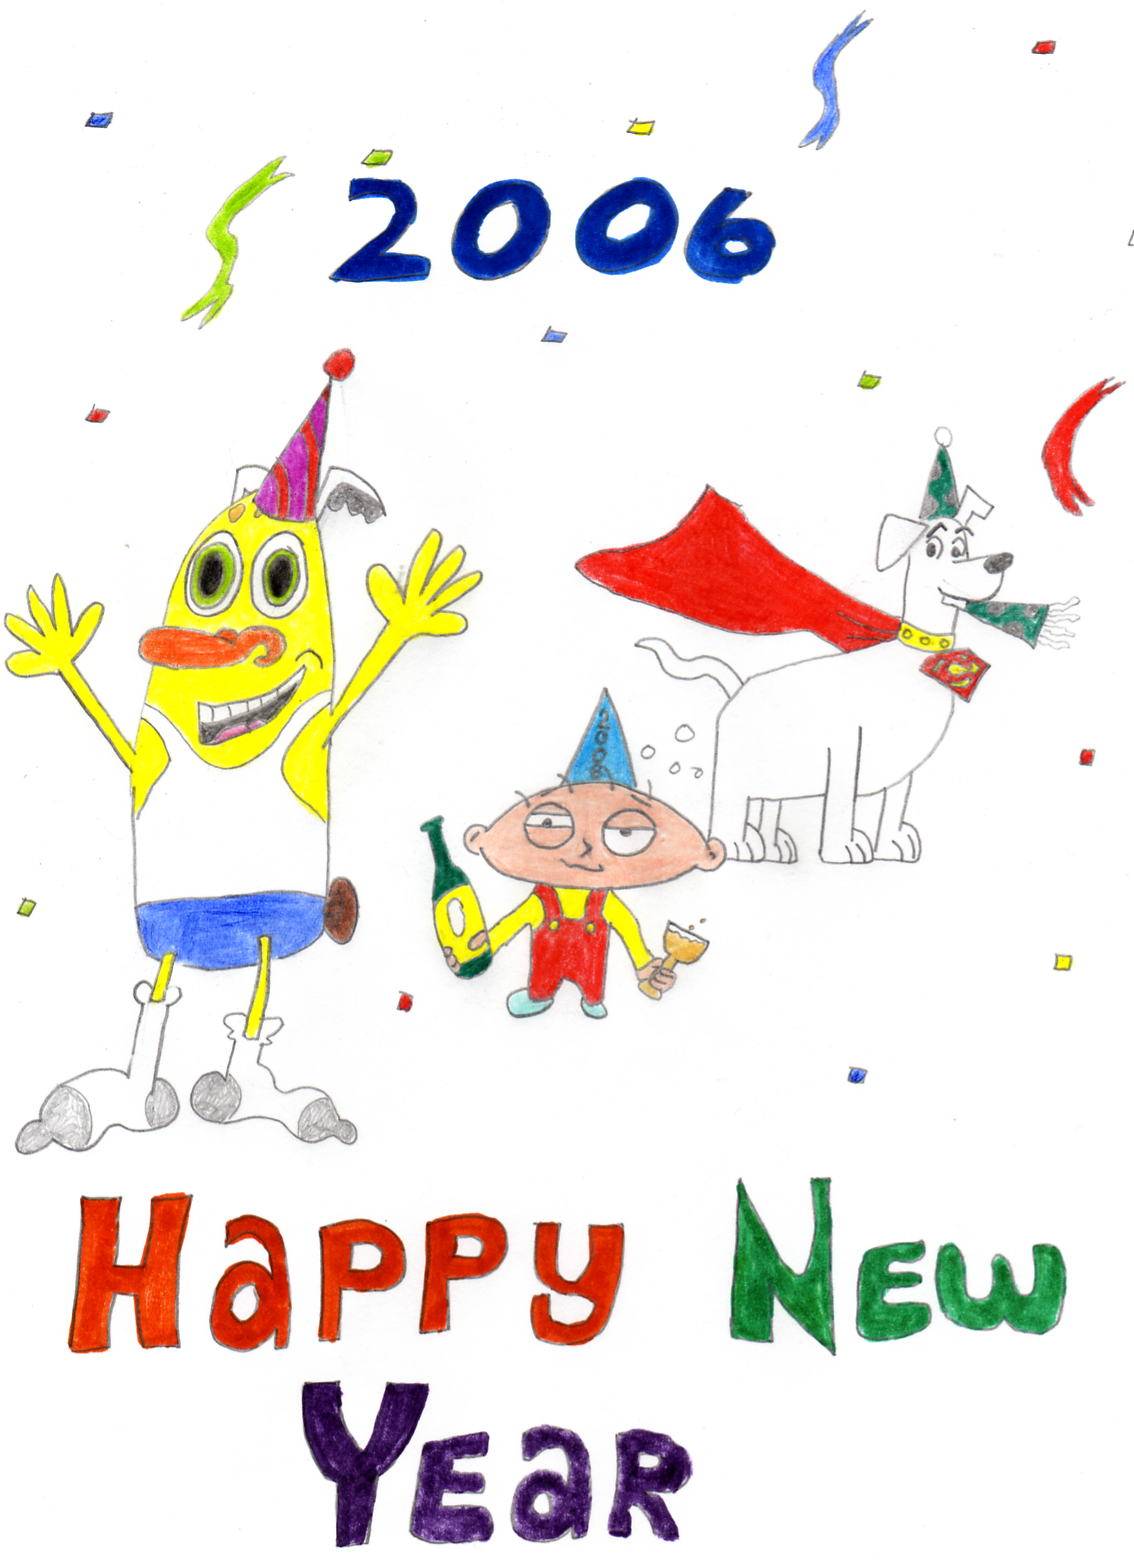 Happy New Year 2006 by fad4ren